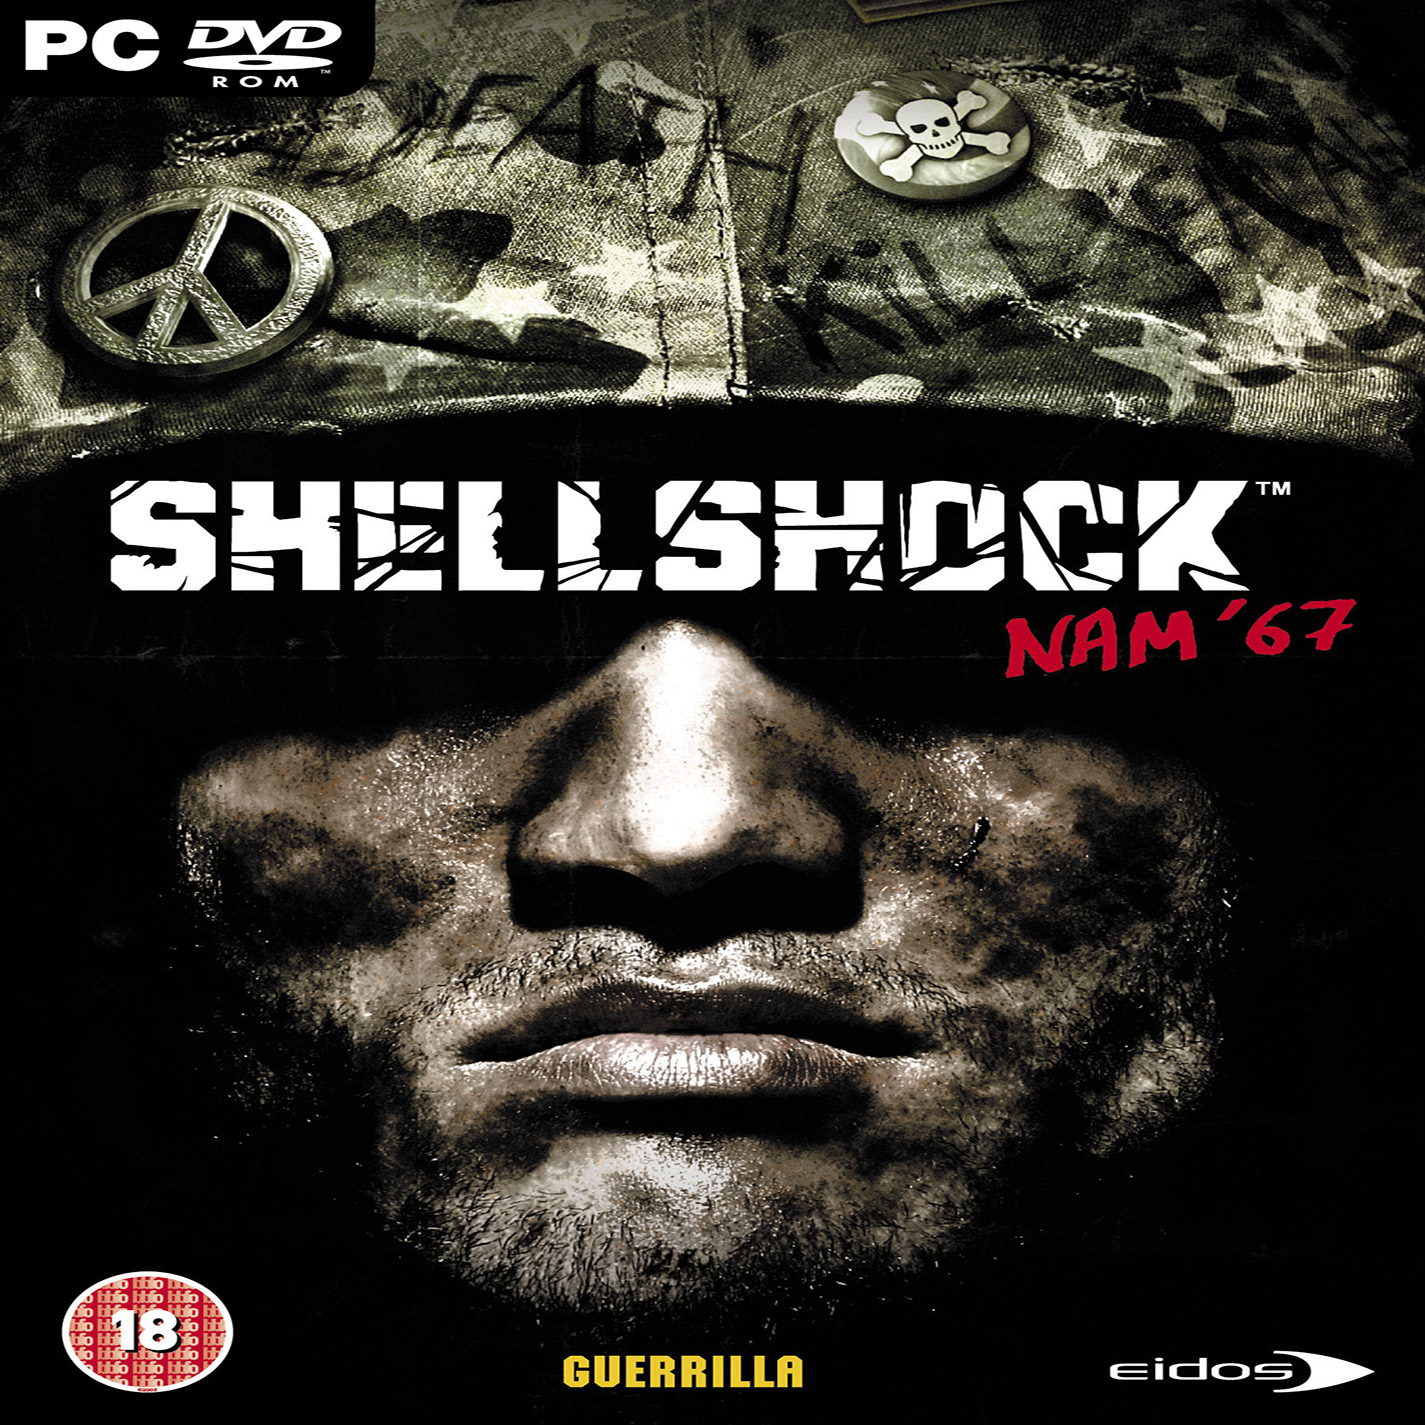 ShellShock: Nam '67 - predn CD obal